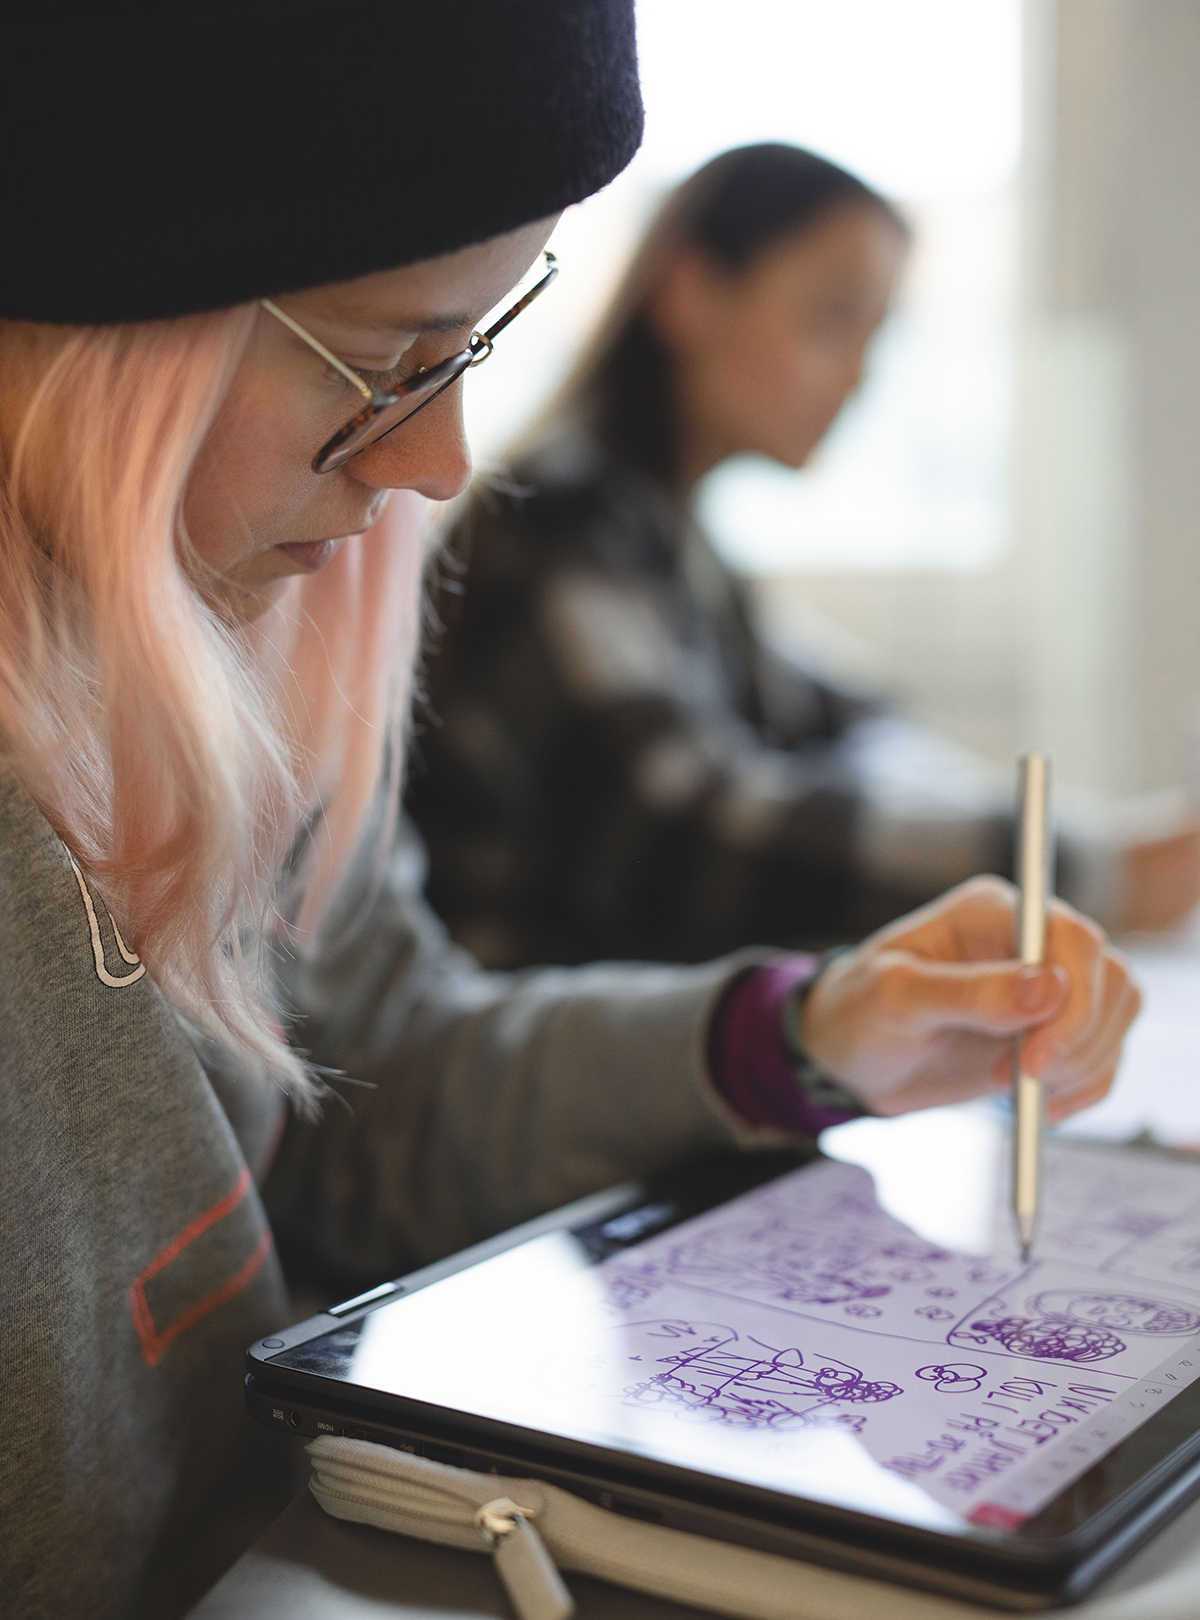 En student med lyserosa hår sitter og tegner på et digitalt tegnebrett. Hun ser konsentrert ut. 